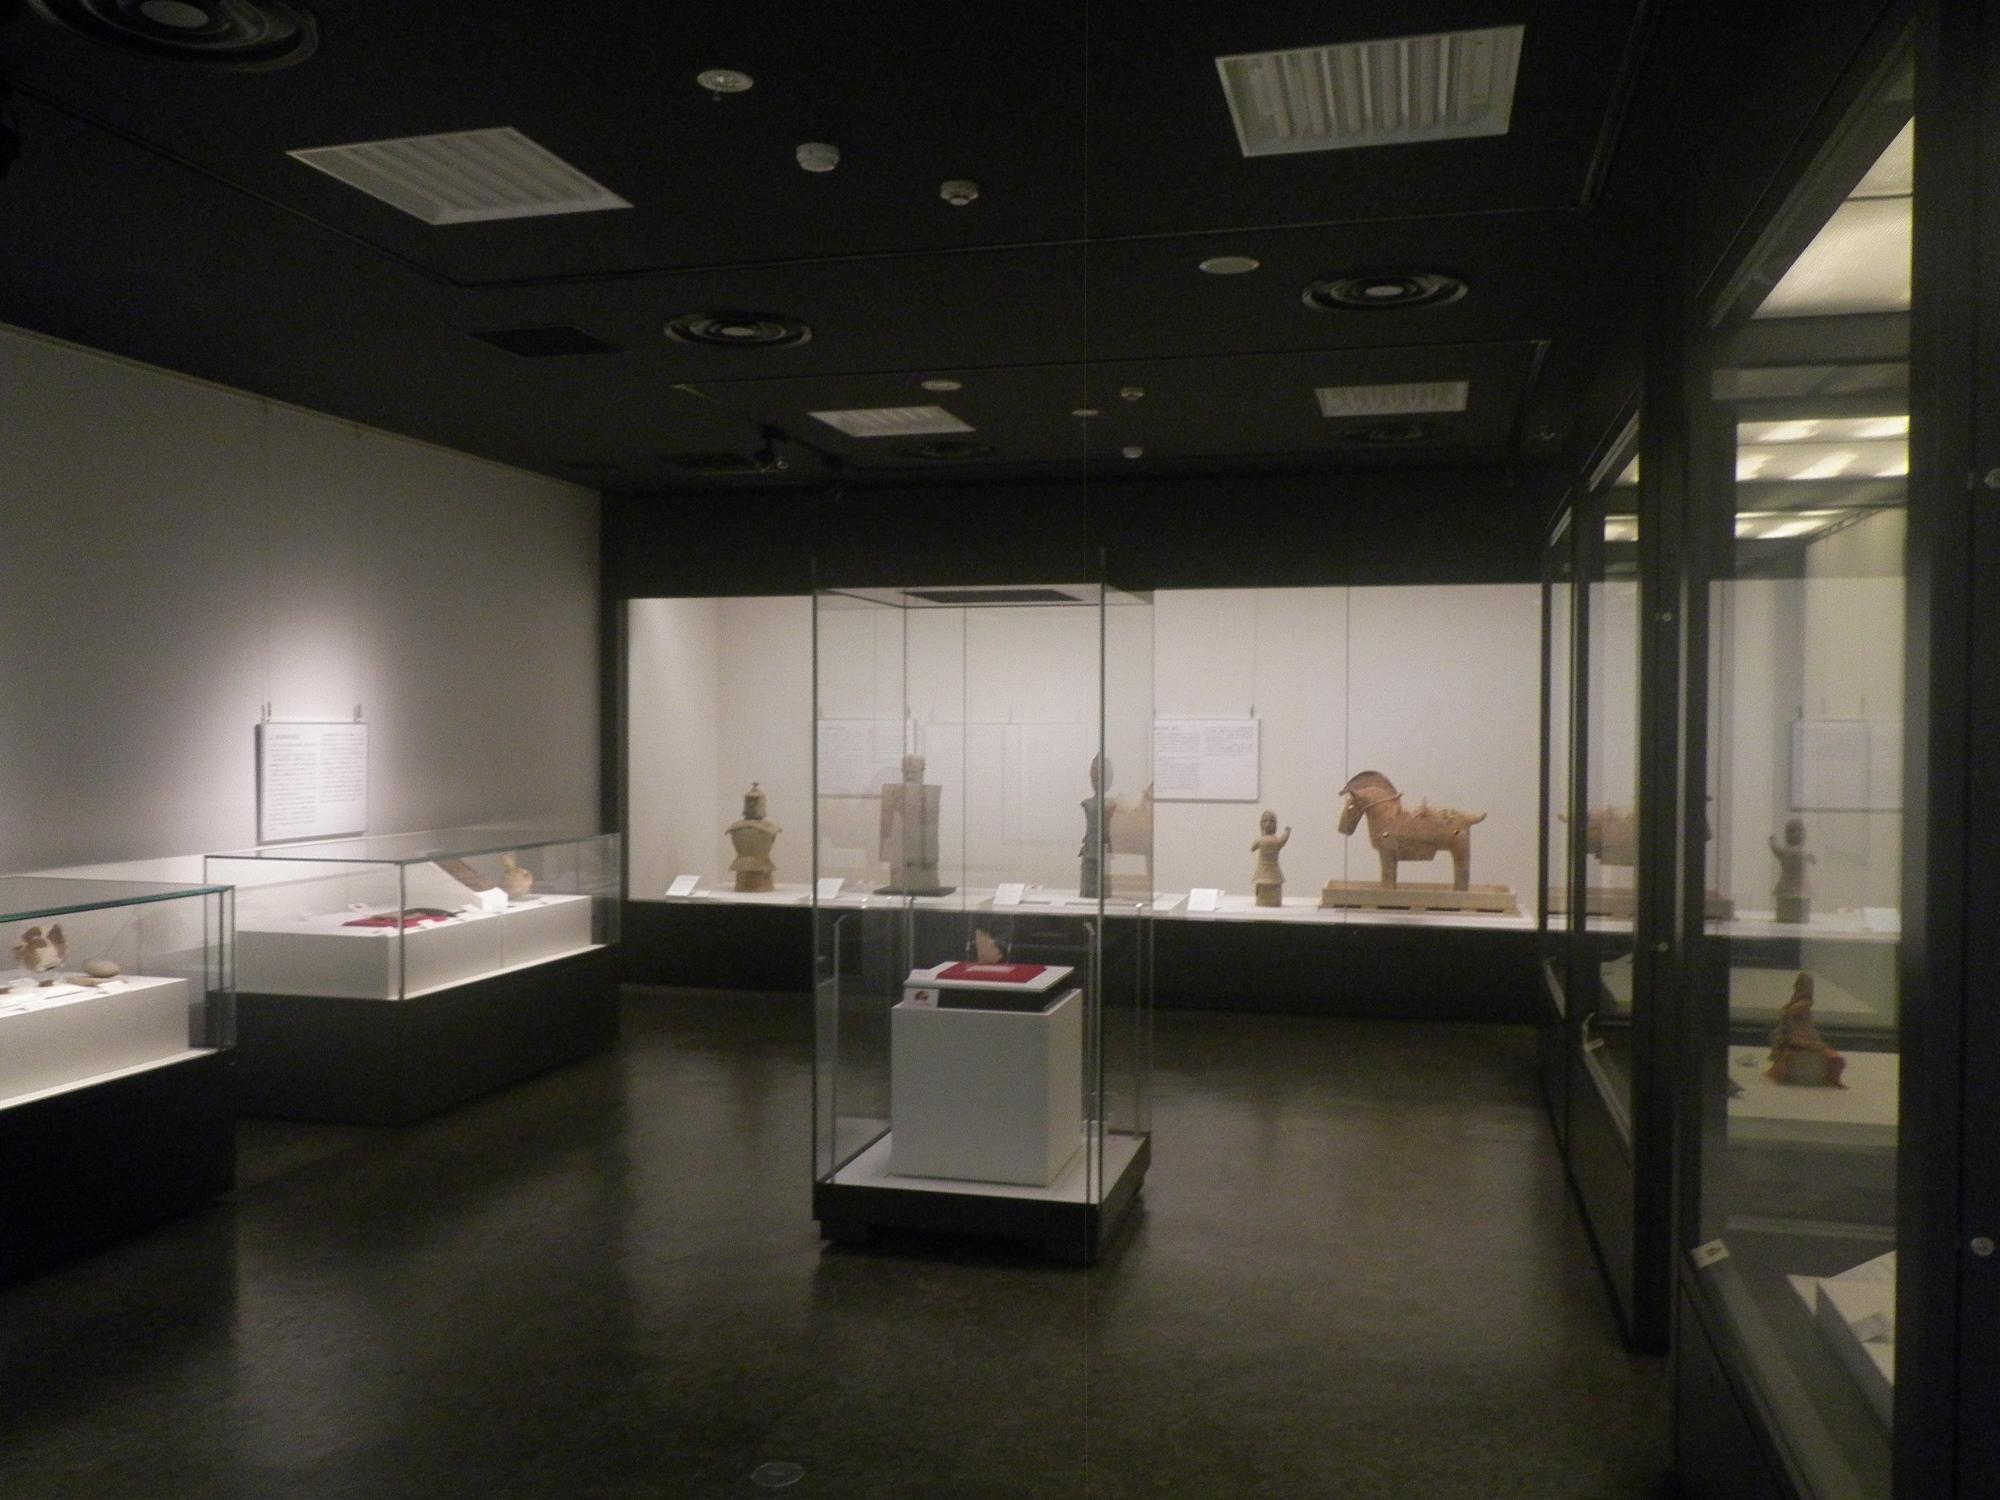 橿原市博物館2019年度春季特別展で館内展示されている縄文時代から古墳時代の遺跡出土品展示の写真